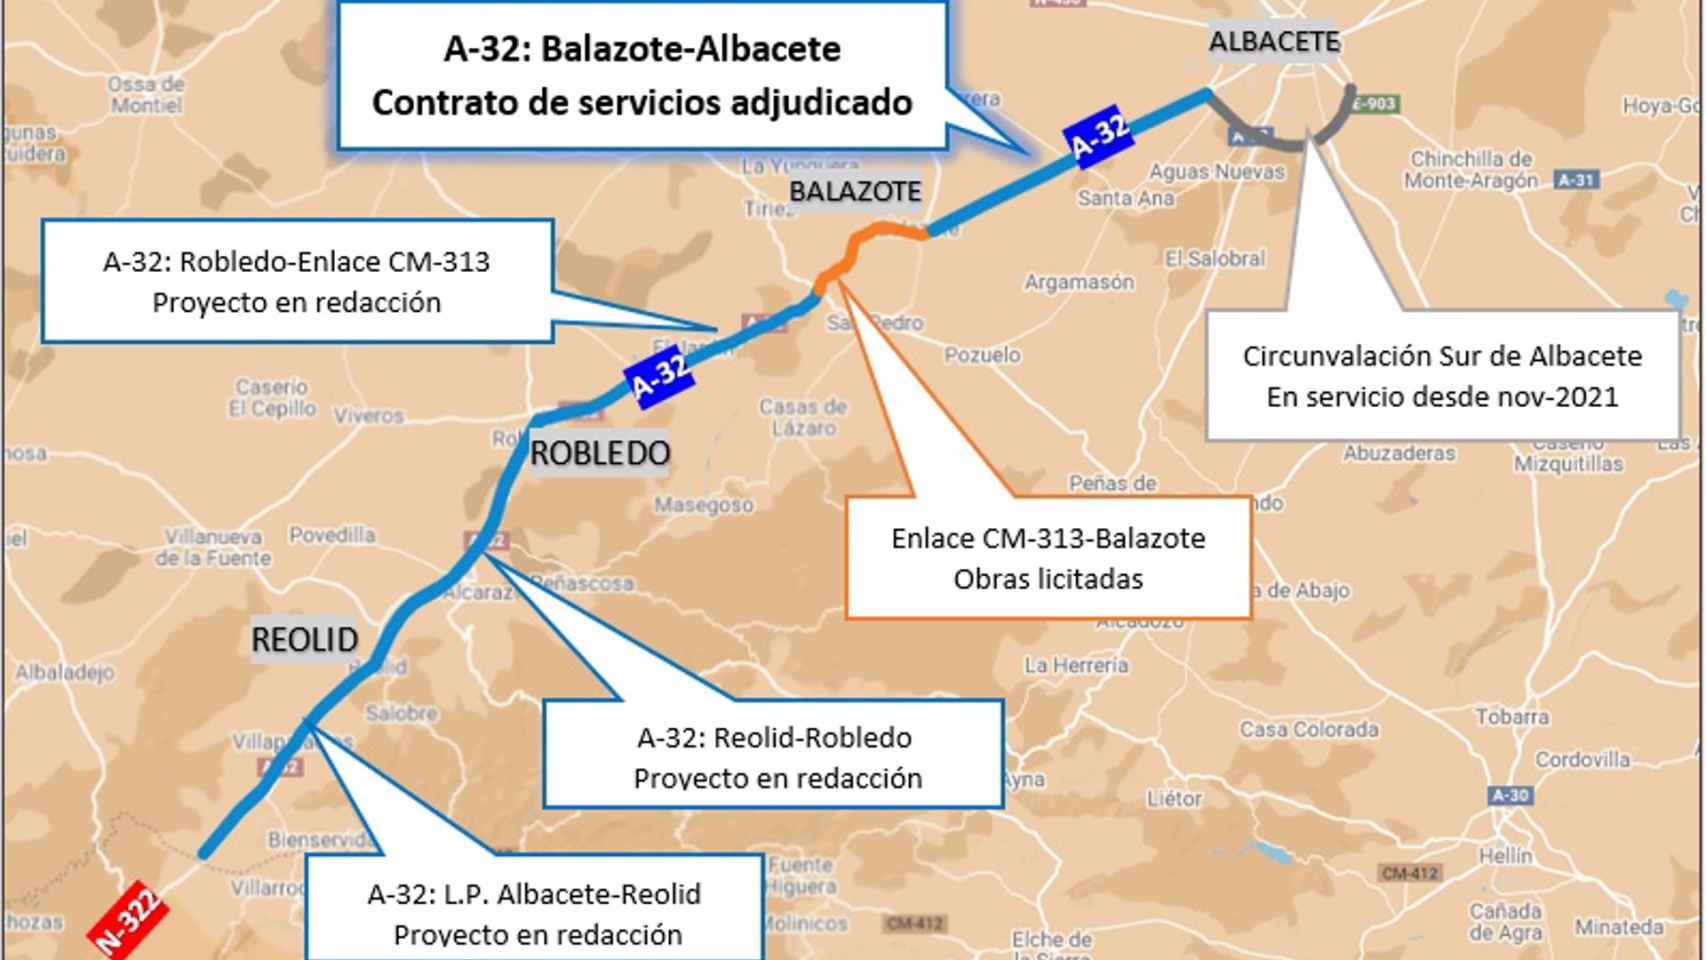 Proyecto del tramo de la A-32 entre Balazote y Albacete. Foto: Mitma.